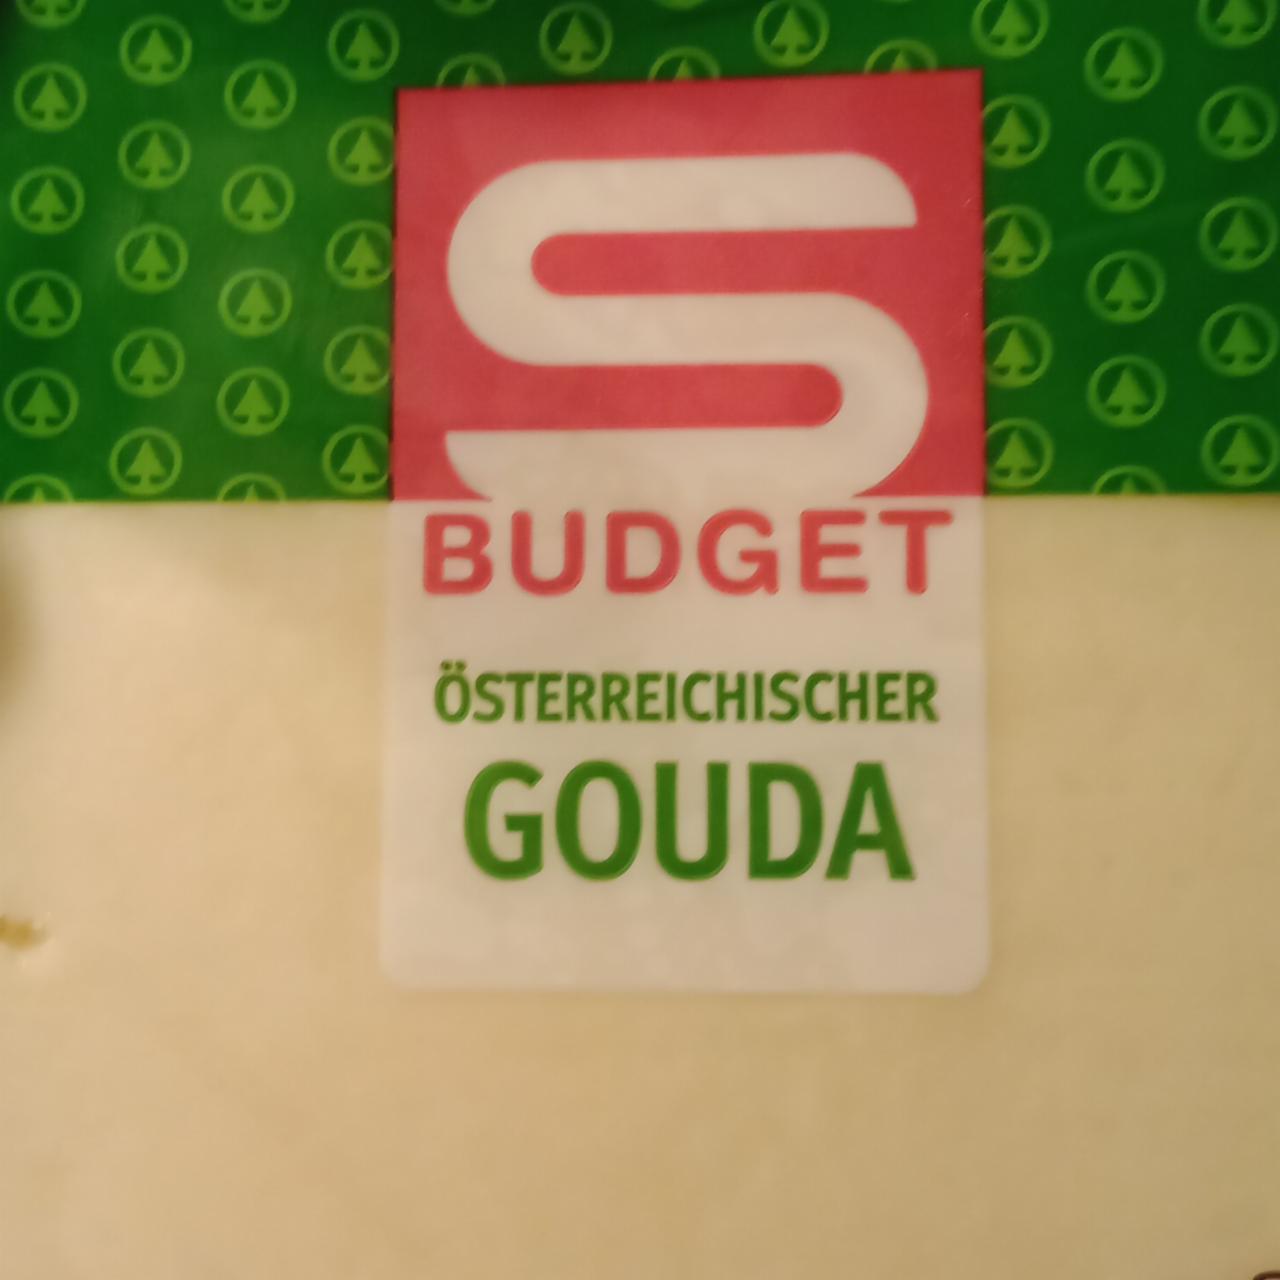 Fotografie - Österreichischer Gouda S Budget